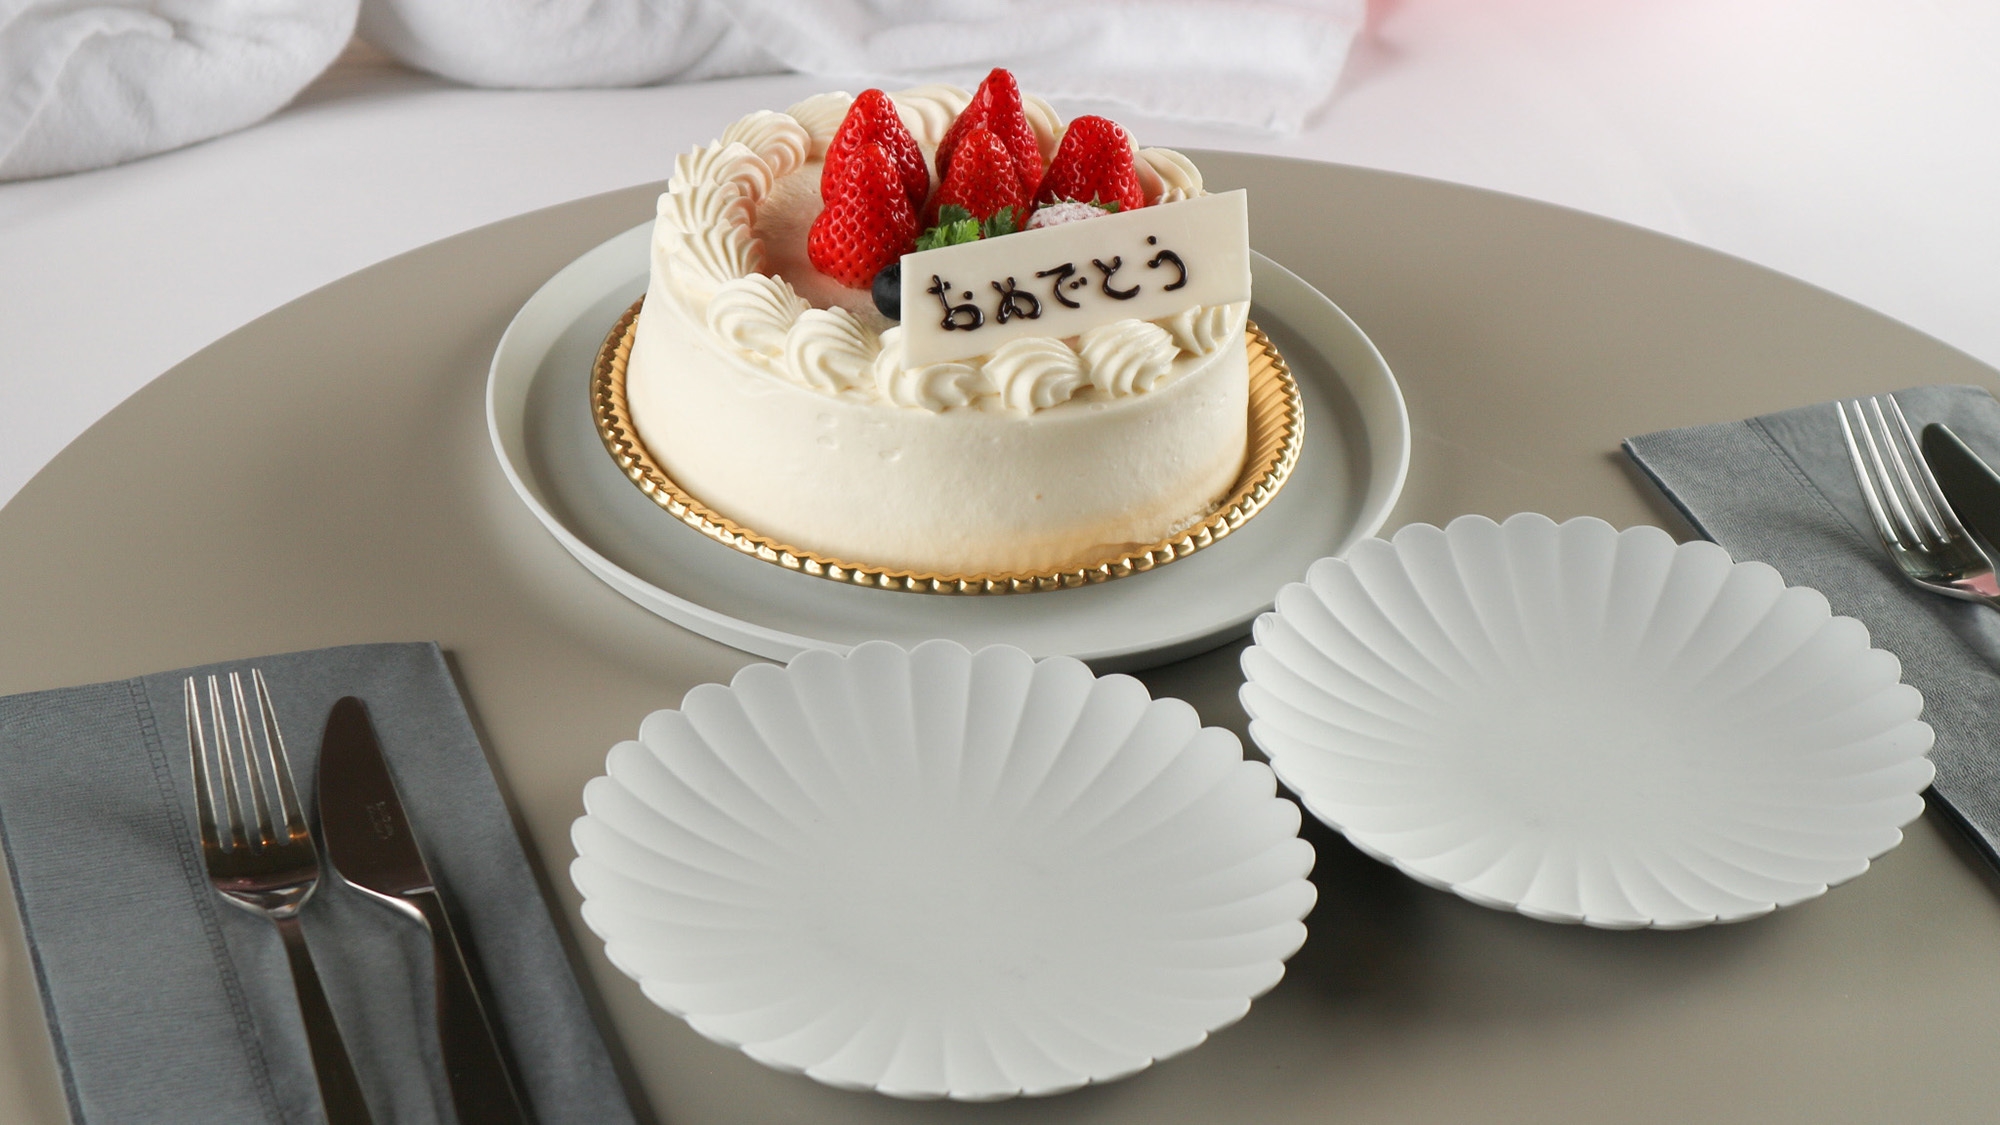 【アニバーサリープラン】装飾バルーン+デコレーションケーキ付き記念日プラン（朝食付き）